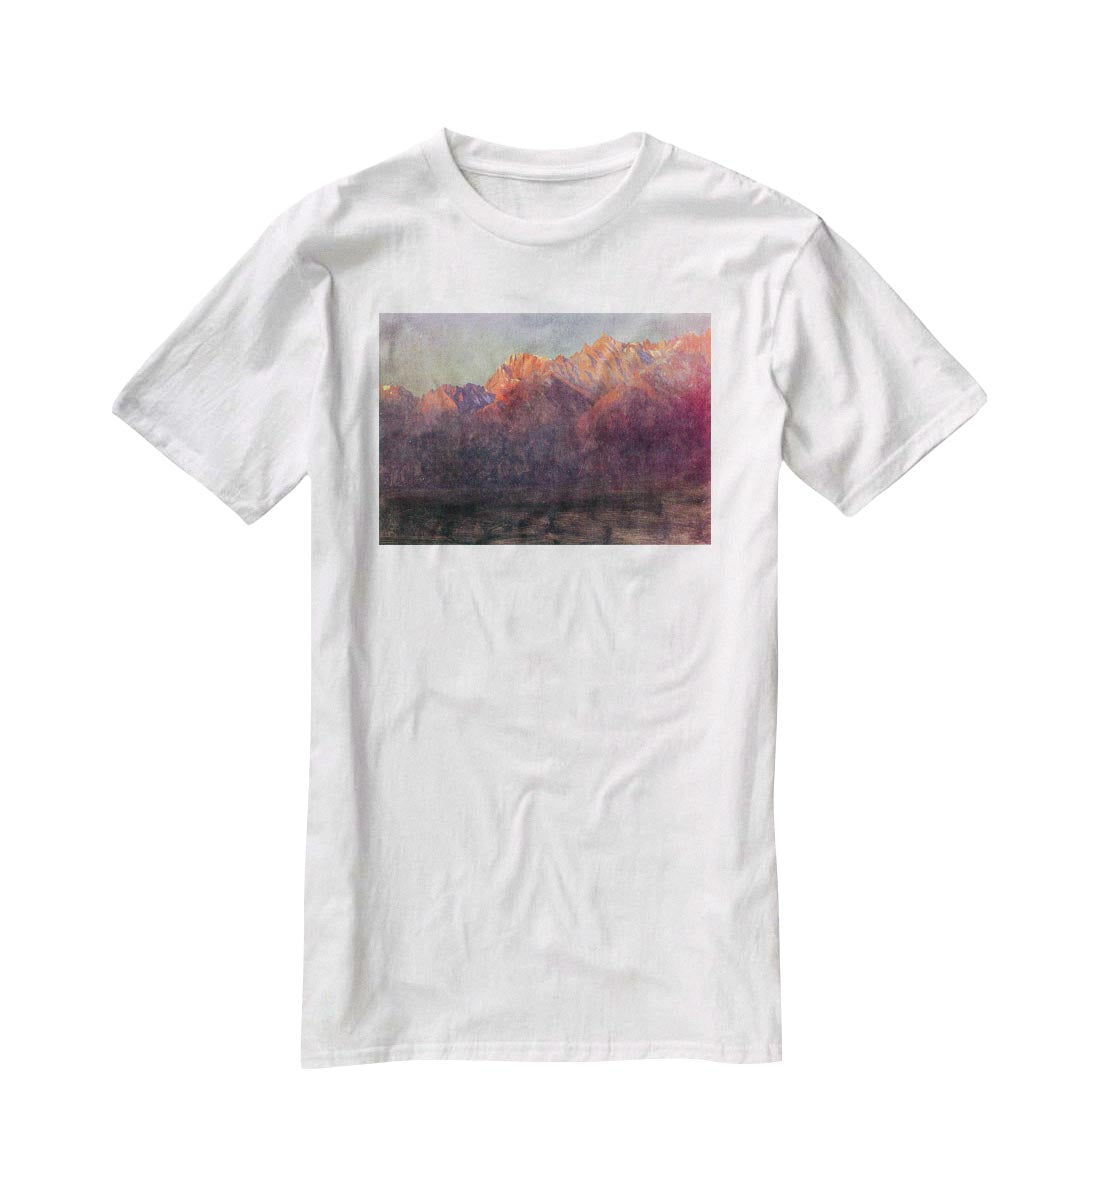 Sunrise in the Sierras by Bierstadt T-Shirt - Canvas Art Rocks - 5